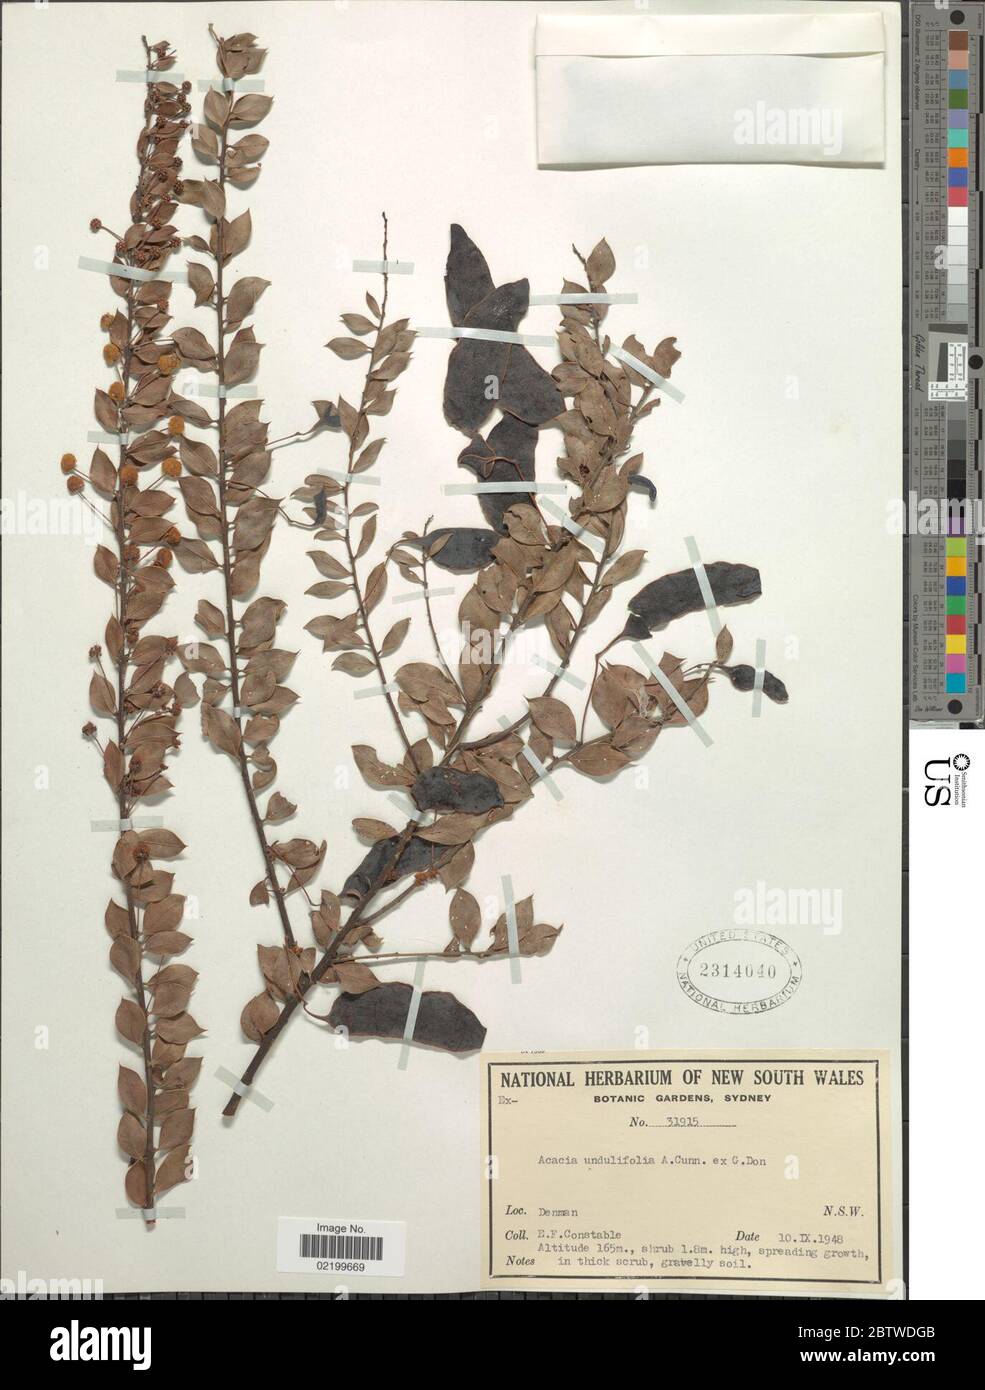 Acacia uncinata Lindl. Stock Photo